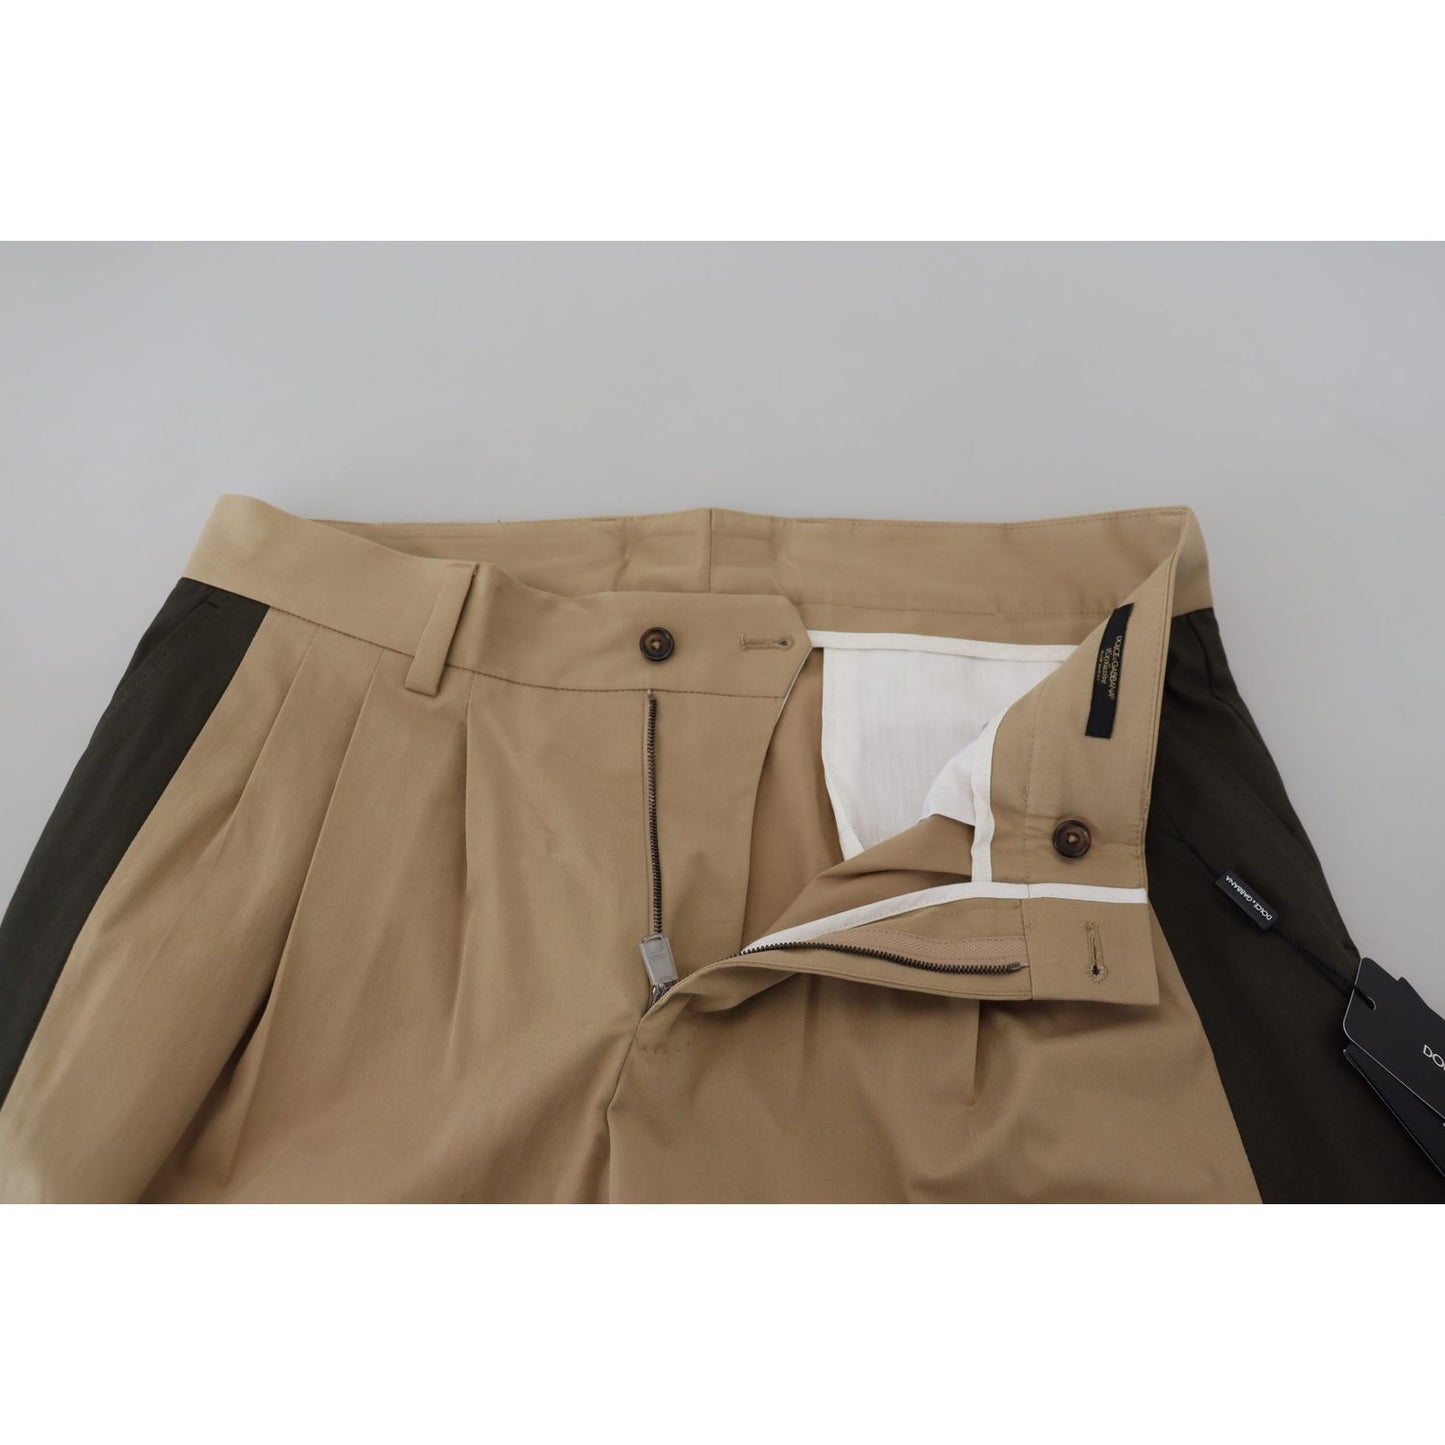 Dolce & Gabbana Elegant Bi-Color Cotton Stretch Pants brown-black-cotton-chino-men-pants